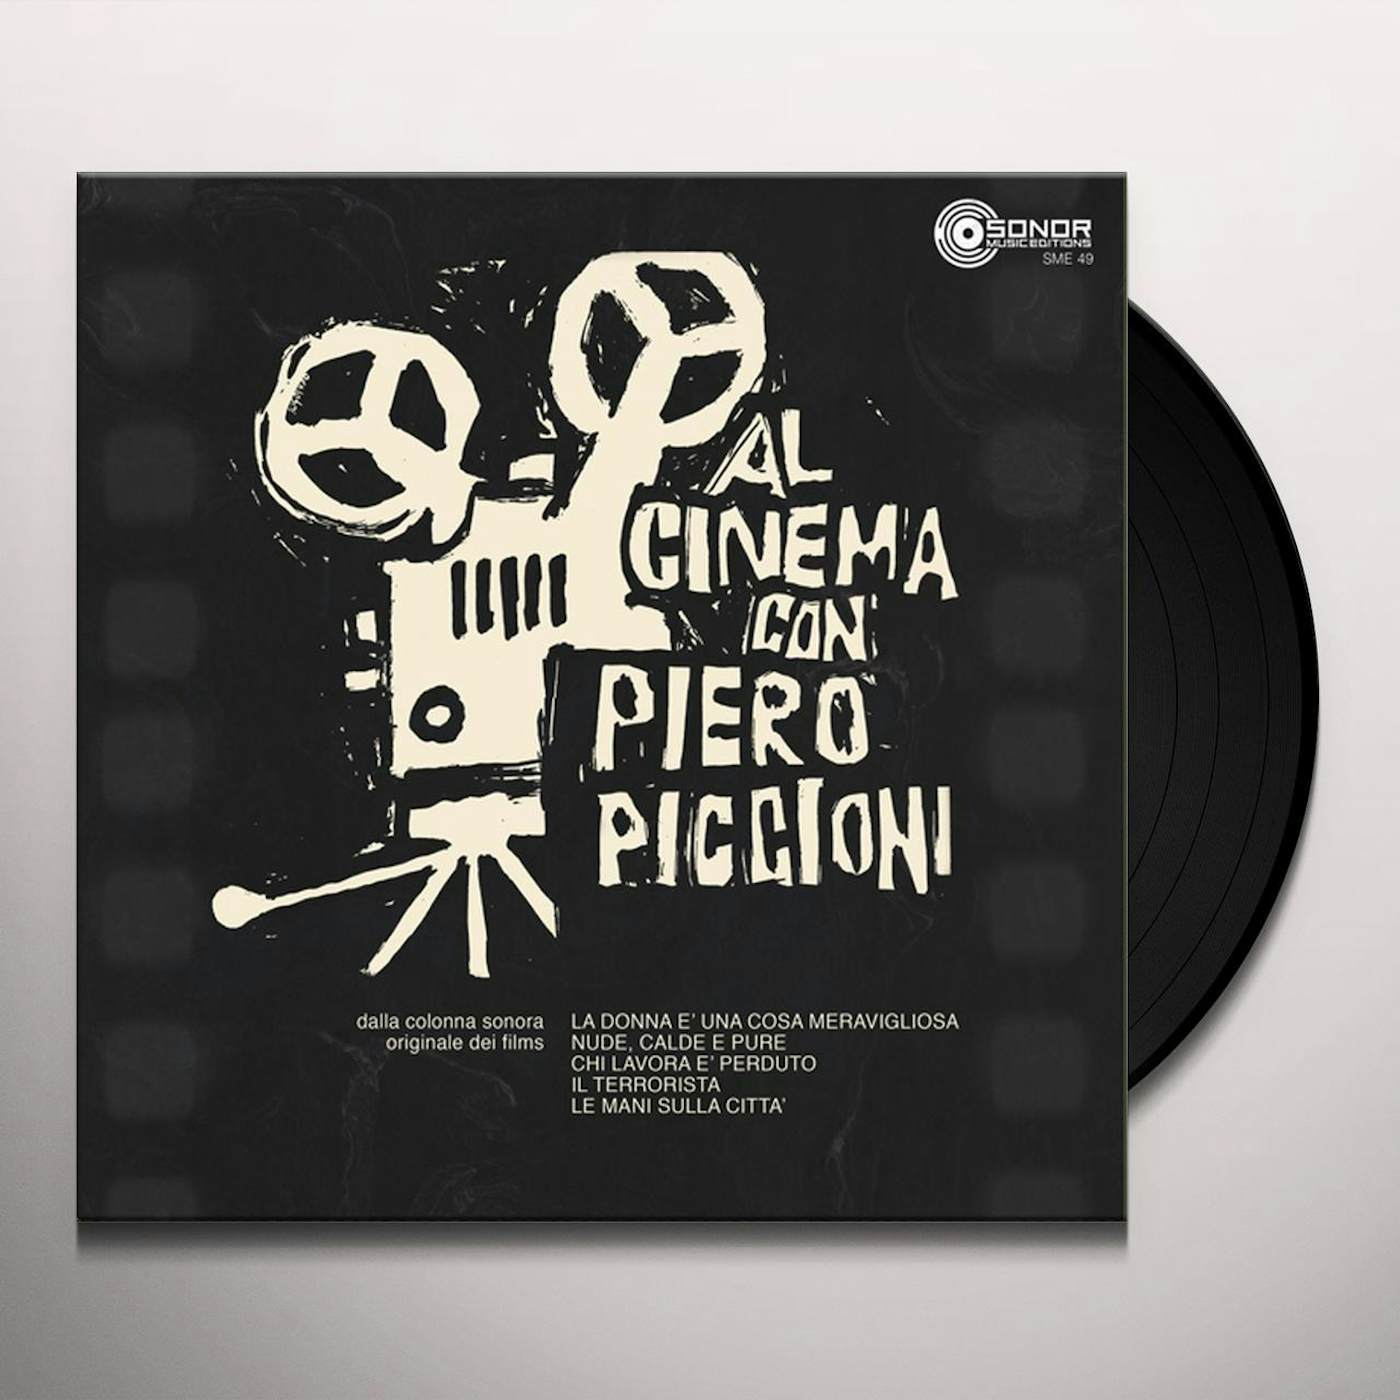 AL CINEMA CON PIERO PICCIONI Vinyl Record